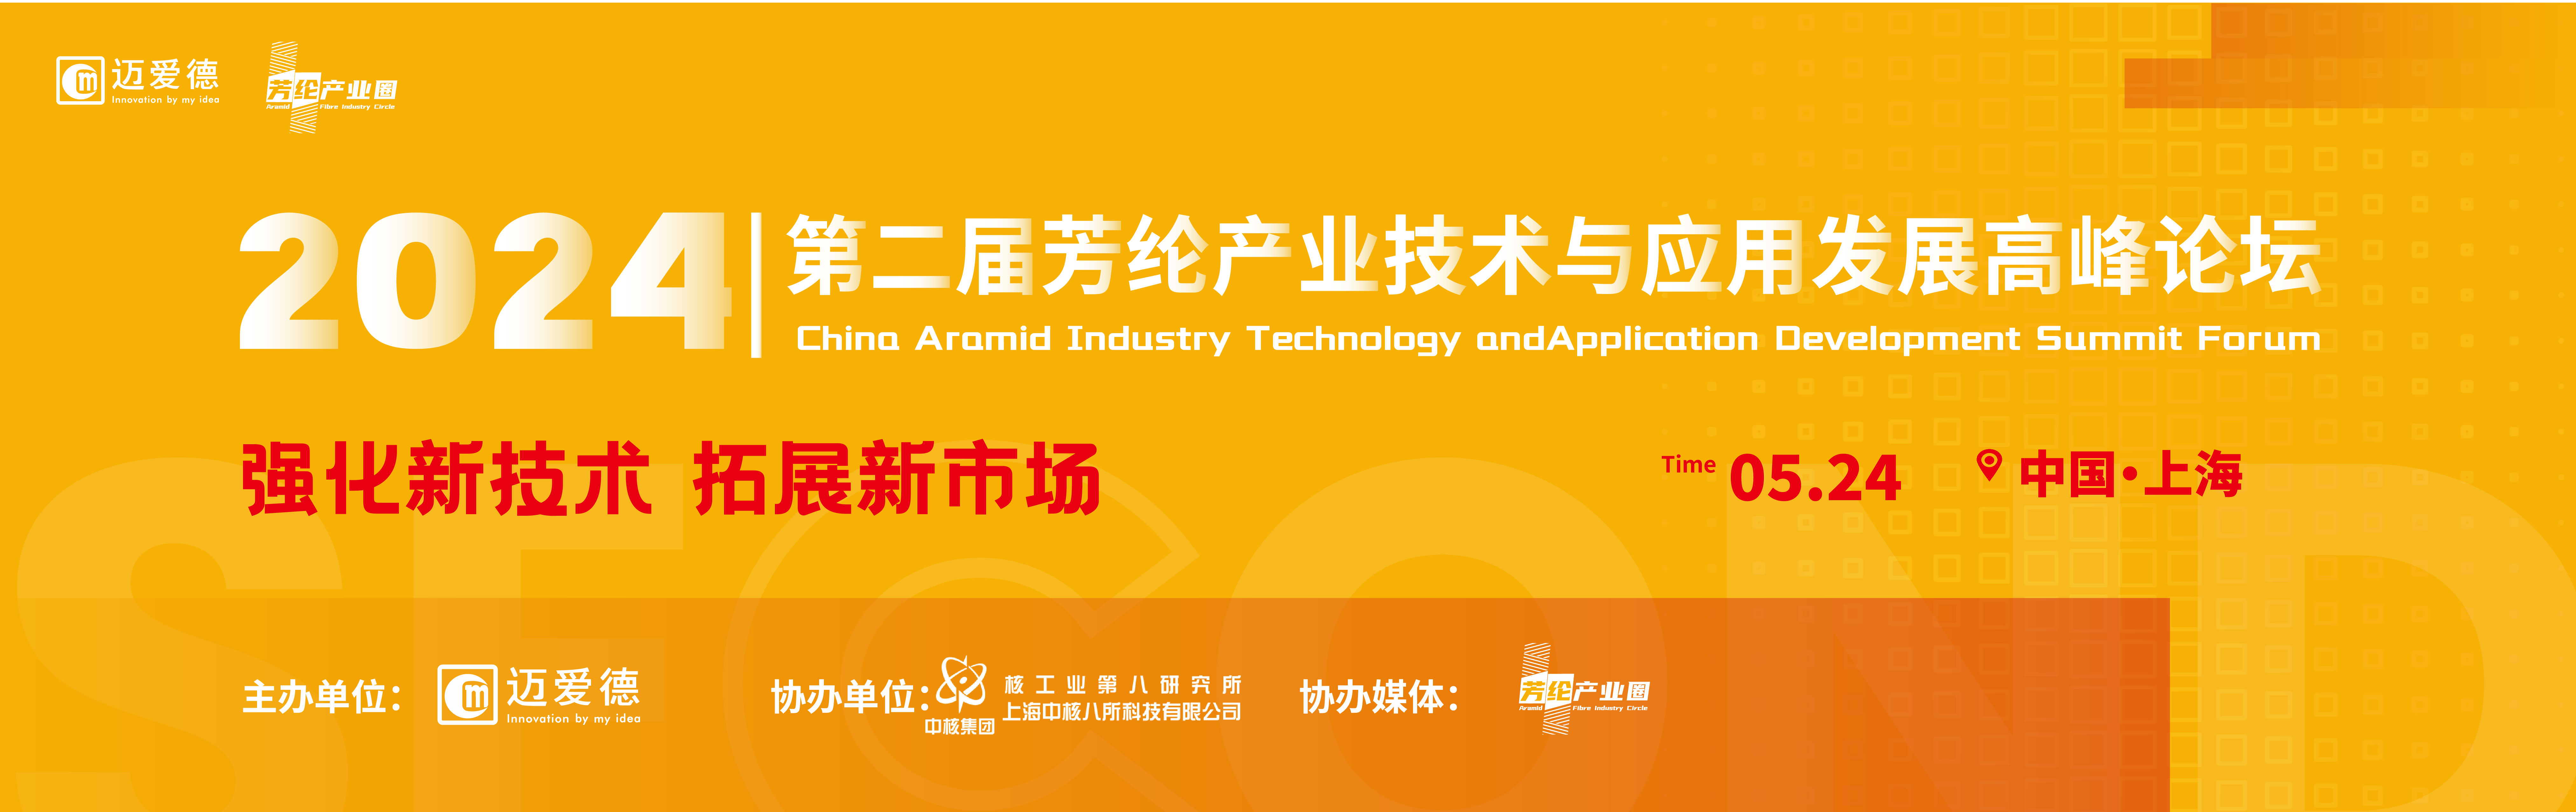 2024芳纶技术应用与产业发展高峰论坛